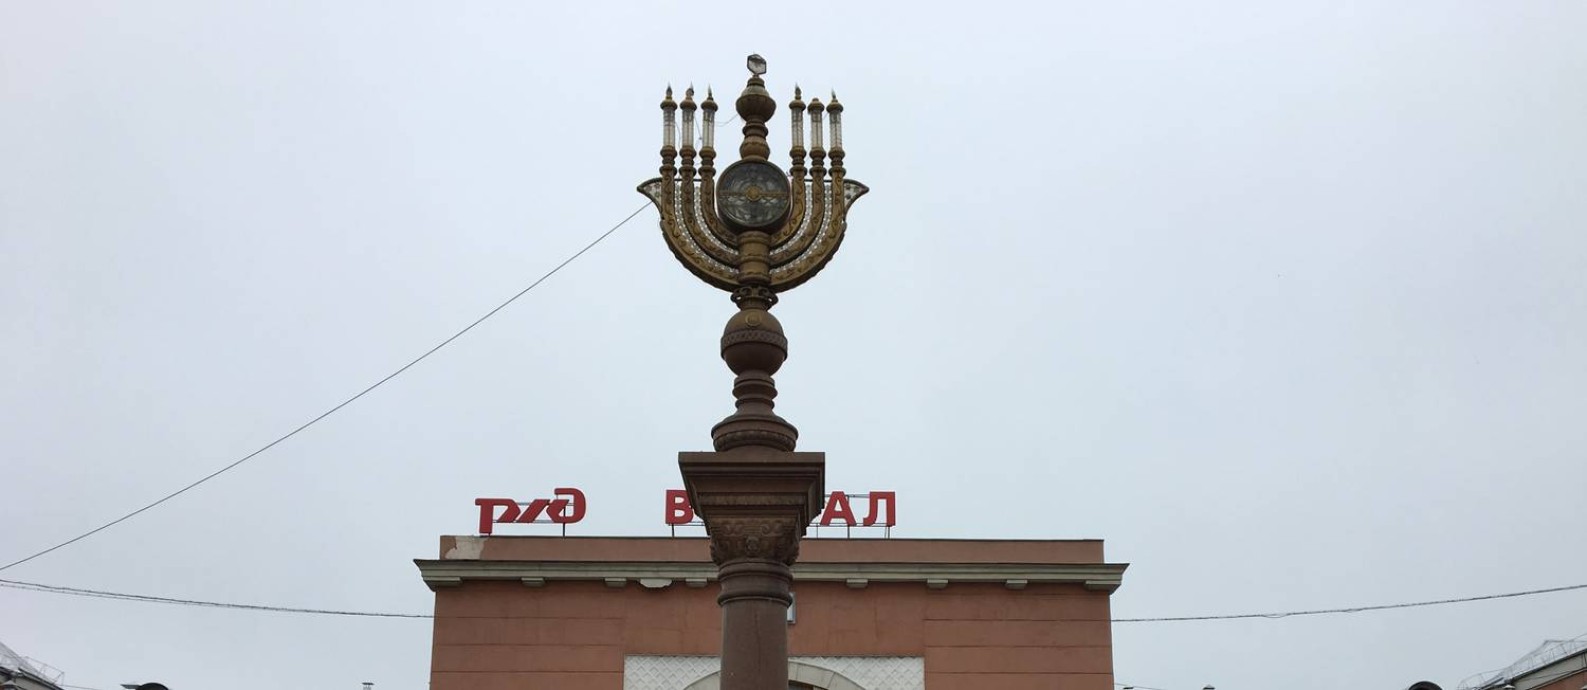 Simbolos da cultura judaica estão por toda parte em Birobidjan Foto: Renato de Alexandrino : Renato Alexandrino 